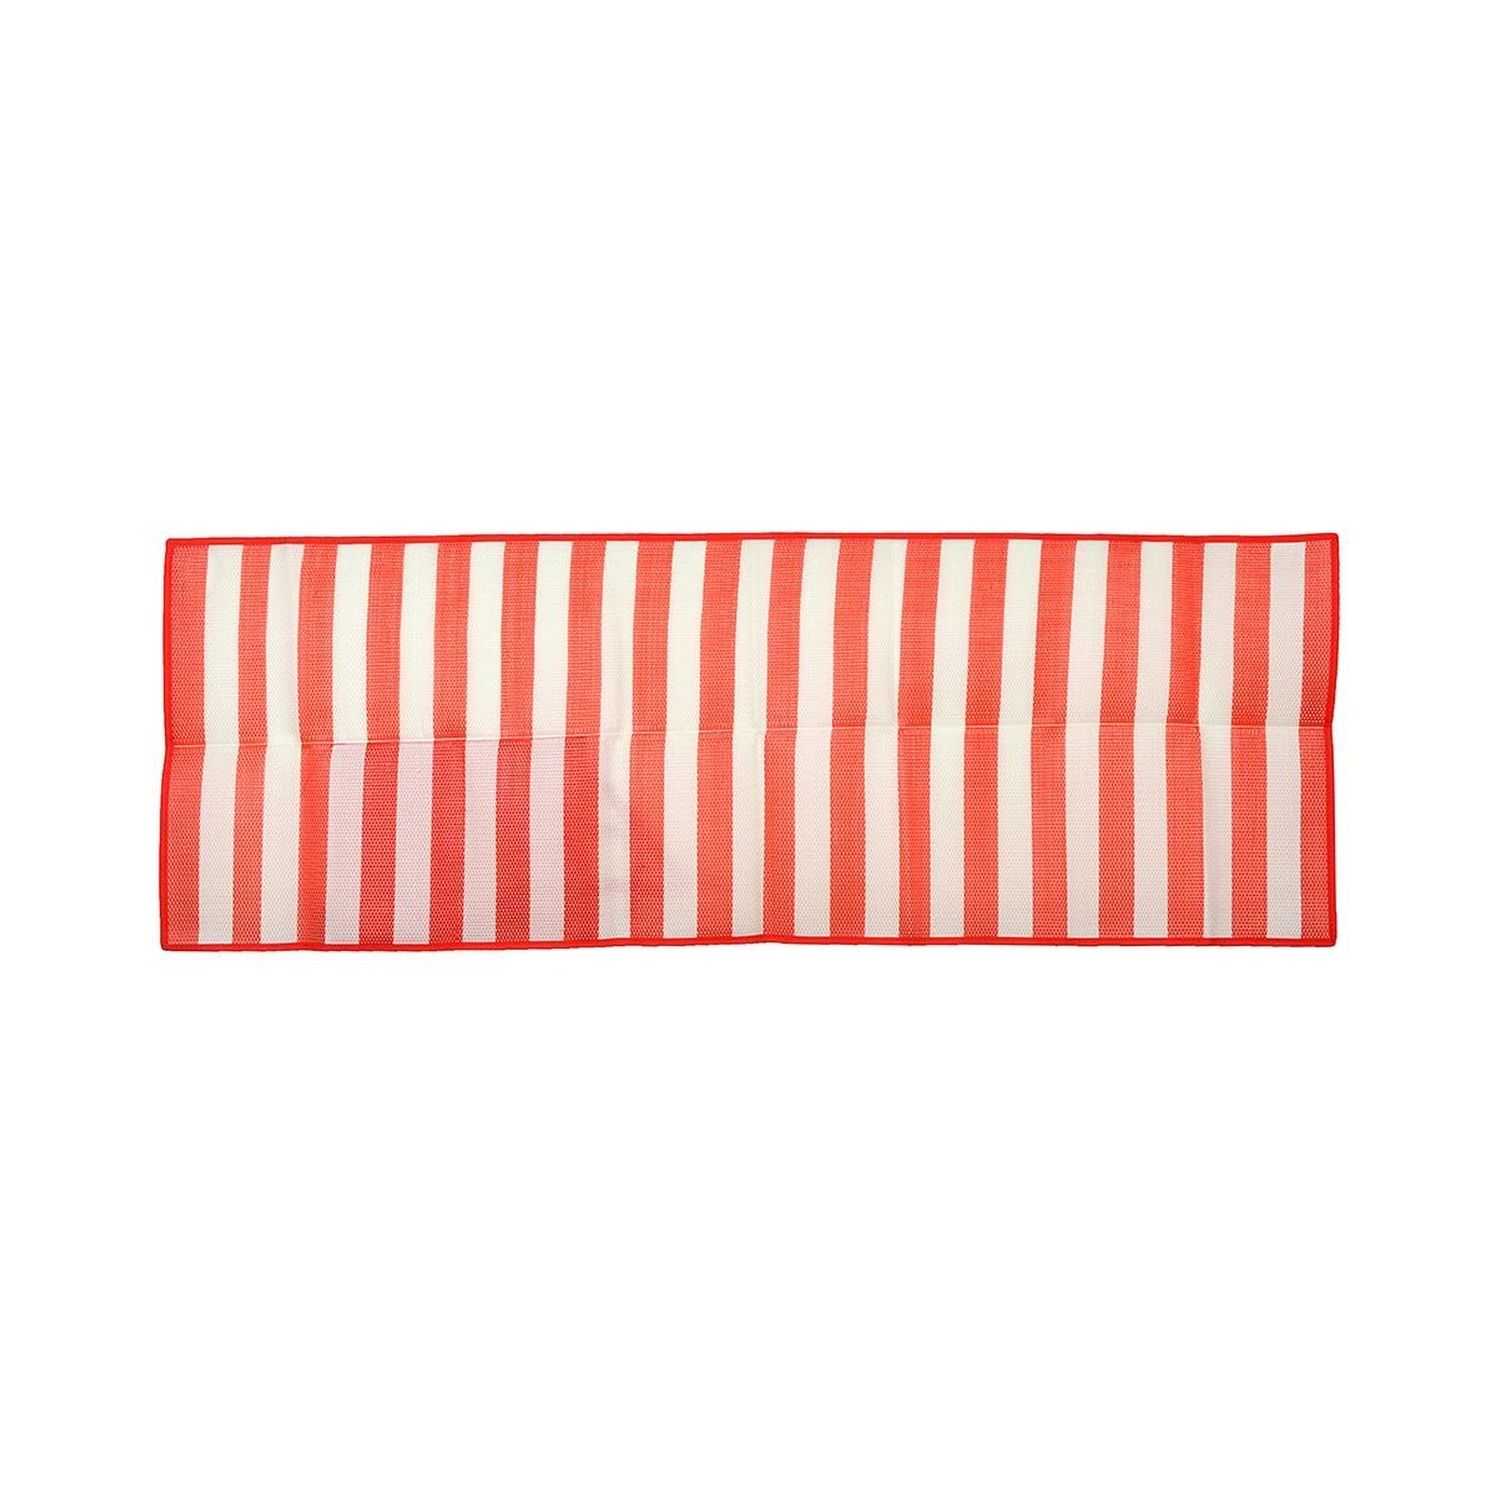 Пляжный коврик Rabizy с ручками для переноски 90х170 см красный - фото 2